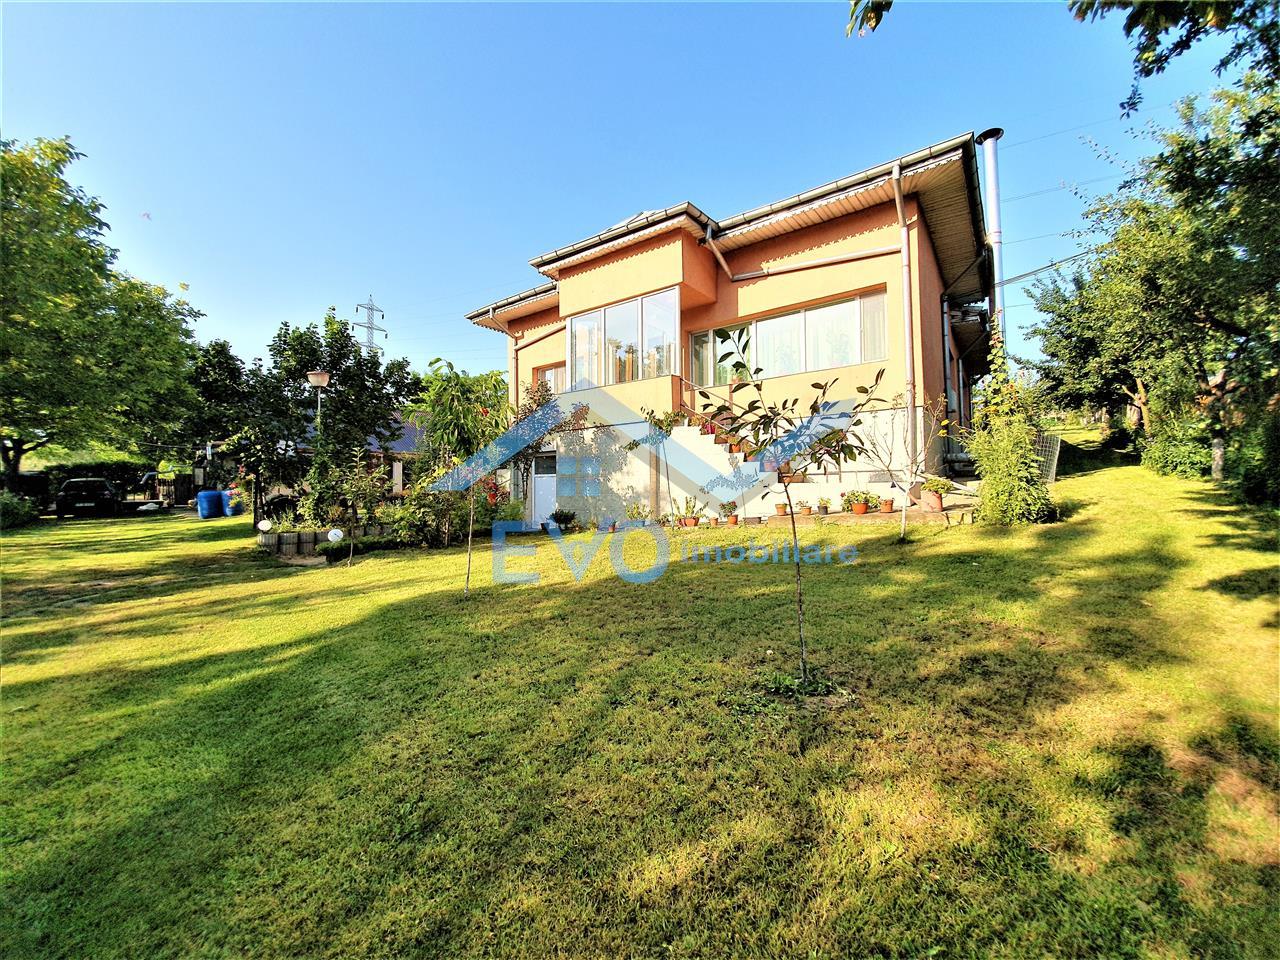 metal Posterity Smooth Vanzare Casa individuala + una de oaspeti, 3146 mp teren, zona Carlig - ID  582